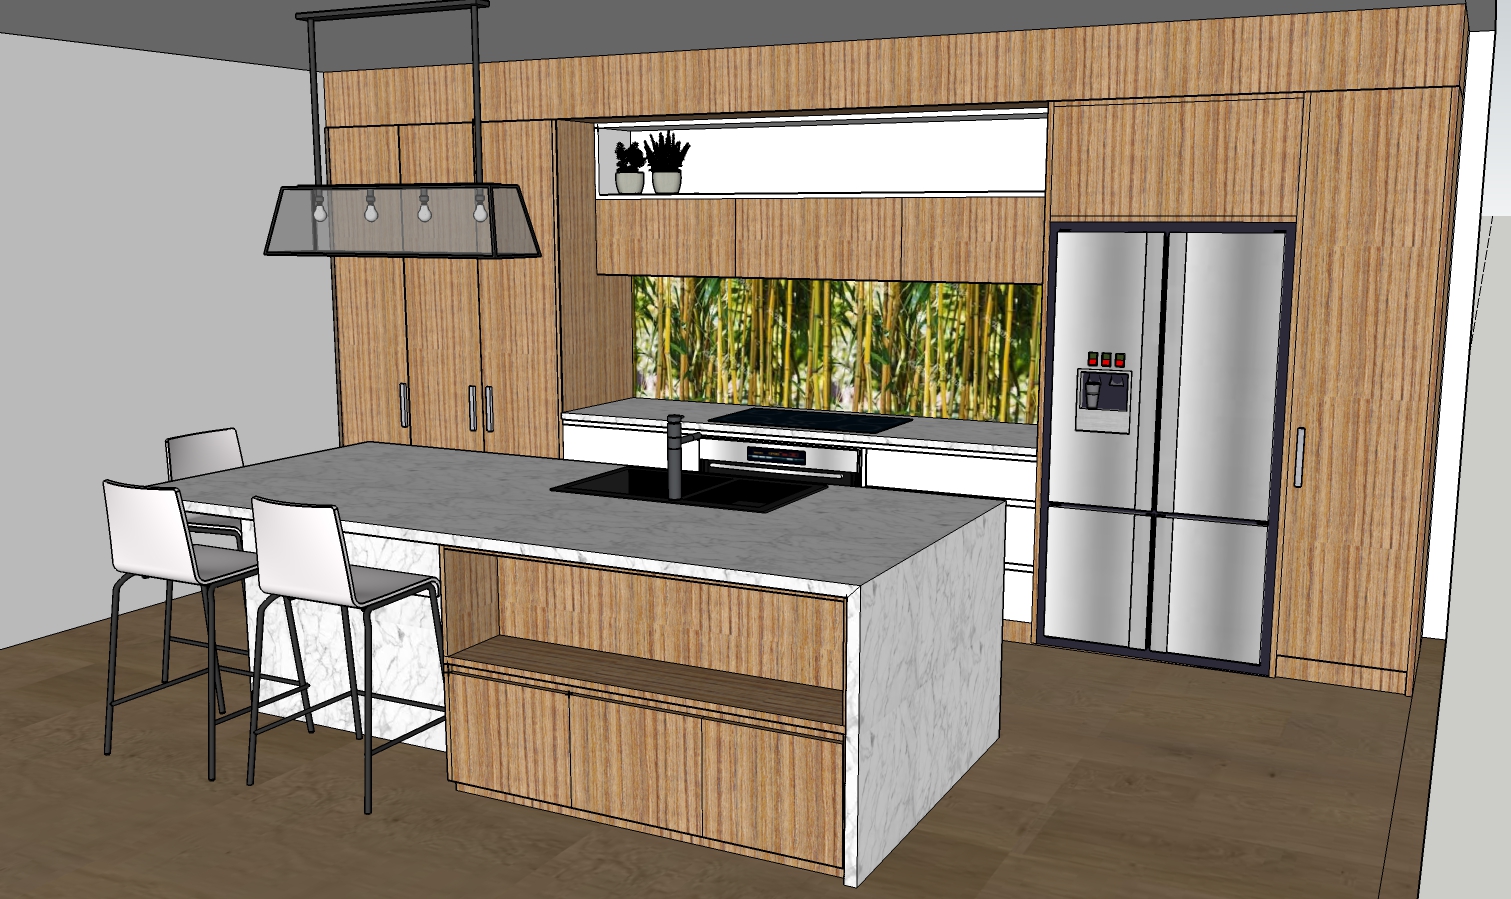 2020 kitchen design software